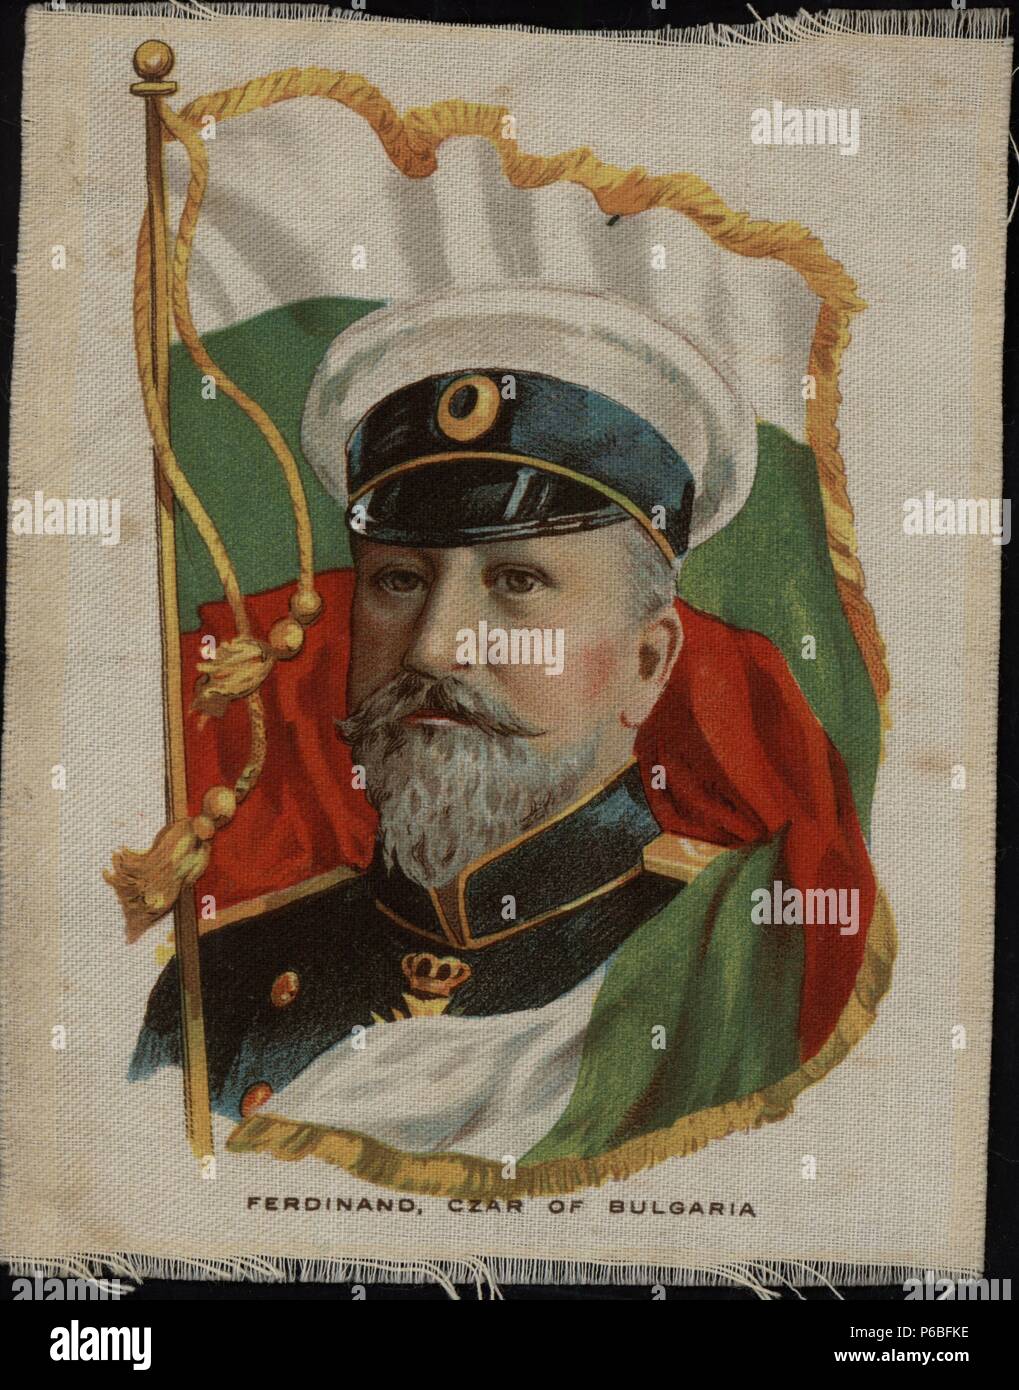 Fernando I de Bulgaria (1861-1948), zar de Bulgaria obligado a abdicar en 1918 tras la derrota del país en la Primera Guerra mundial . Retrato y bandera impresos sobre tela. Años 1920. Stock Photo